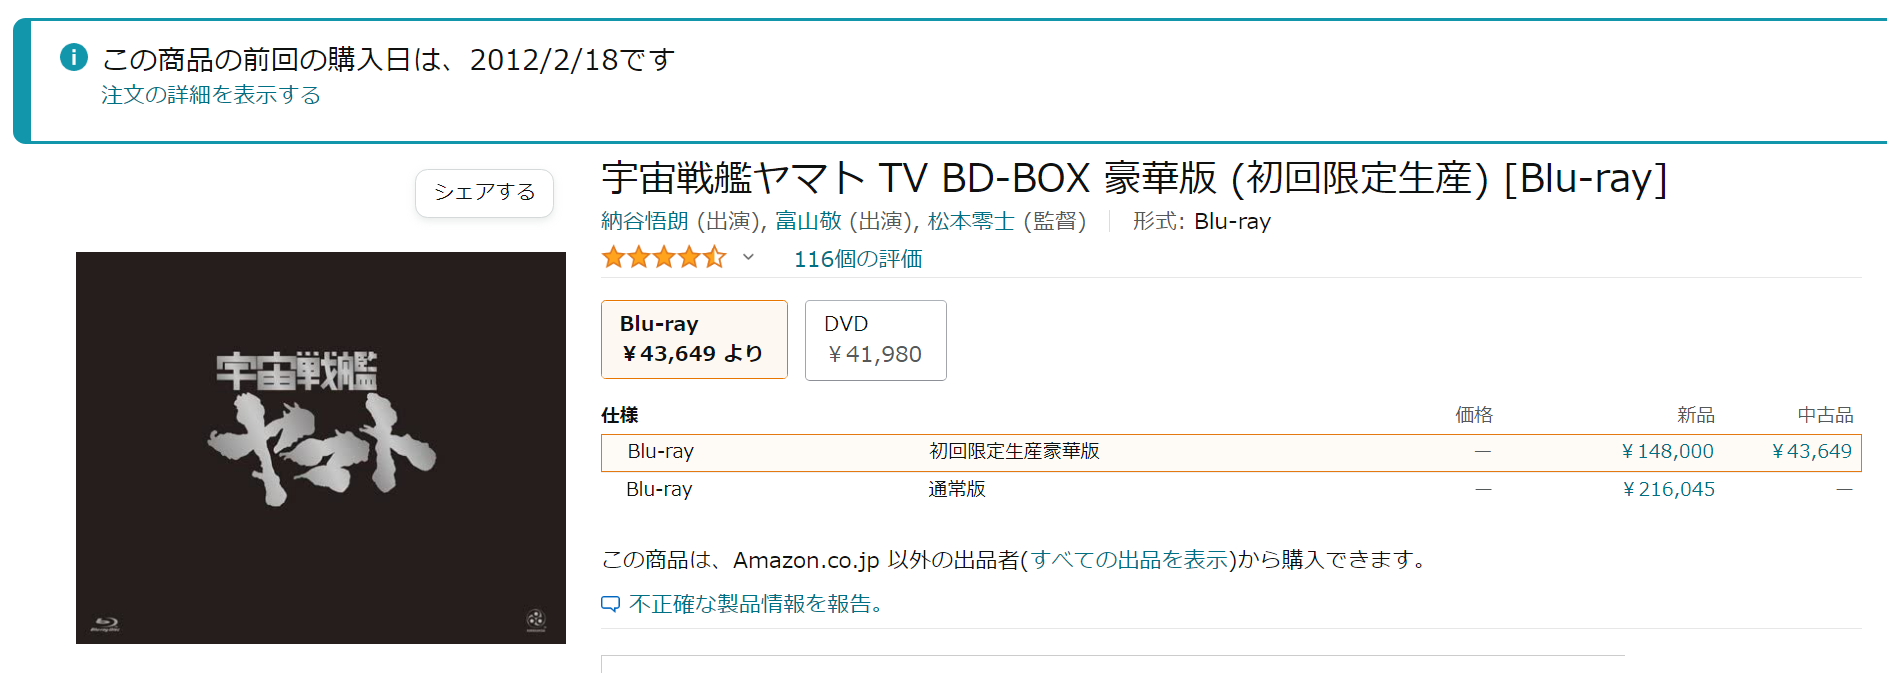 『宇宙戦艦ヤマト』BD-BOX 高騰